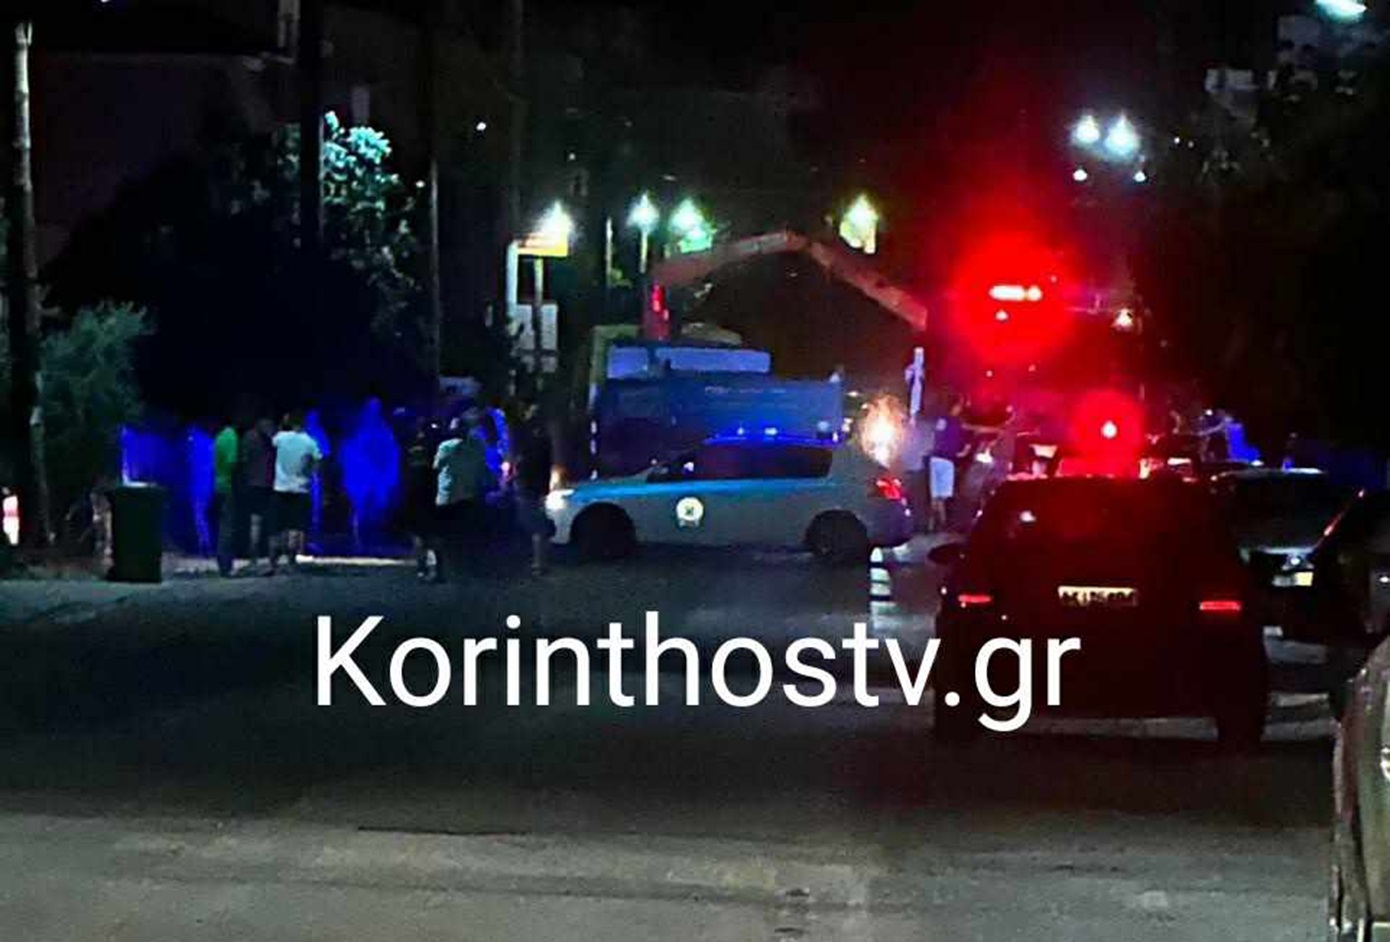 Σοβαρό τροχαίο στην παλαιά Εθνική Οδό Πατρών–Κορίνθου &#8211; Ένας άνδρας ανασύρθηκε χωρίς τις αισθήσεις του, δύο ακόμη τραυματίες